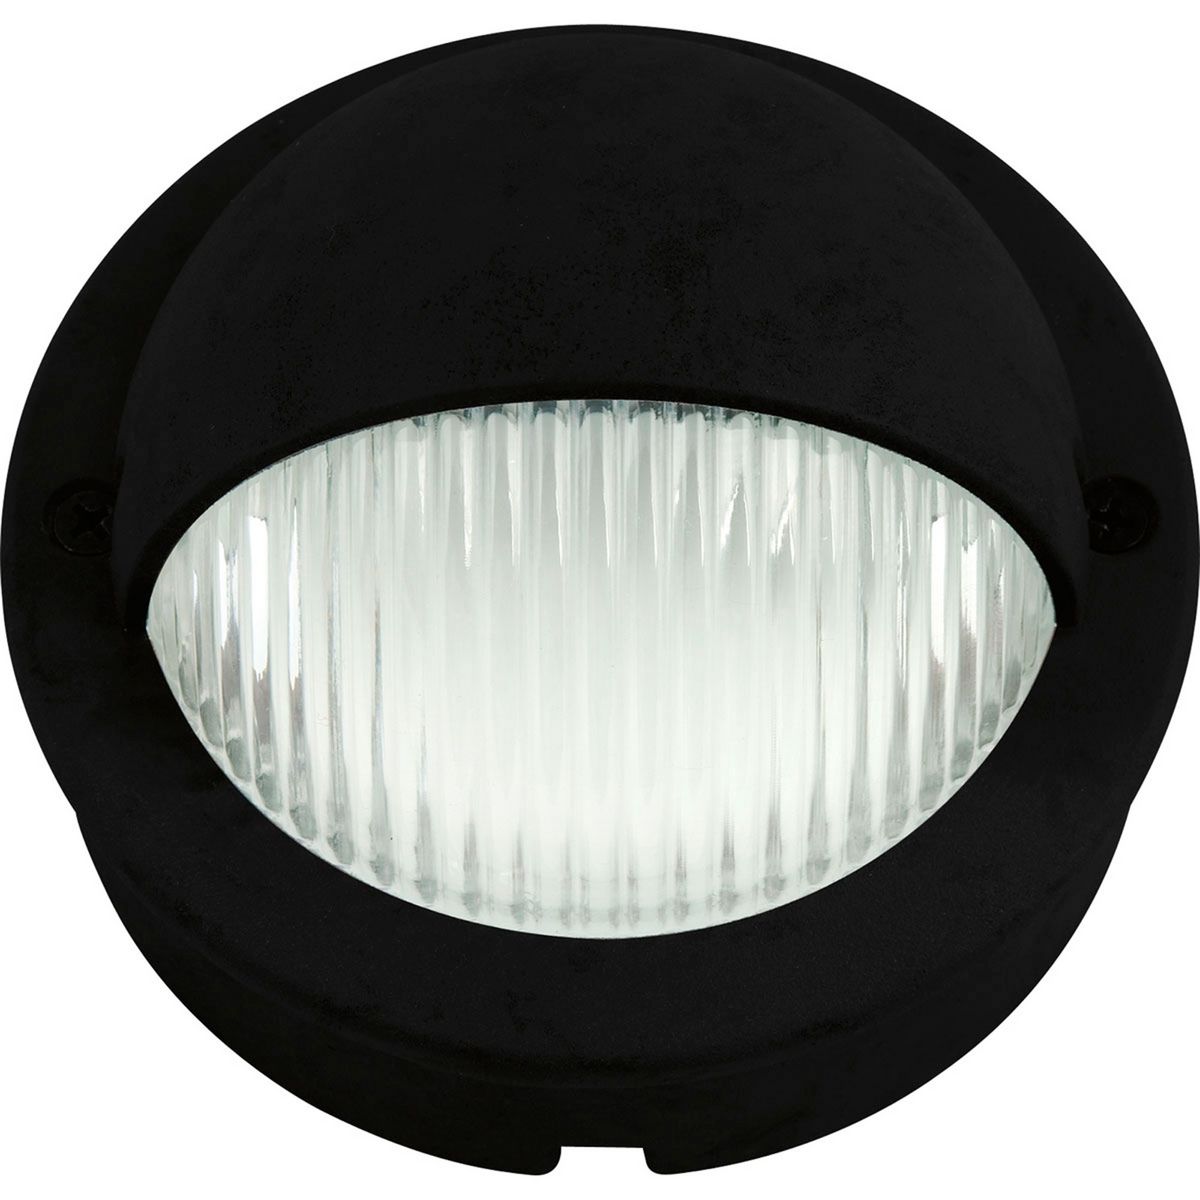 P5296-31 1.5W LED RAIL LIGHT